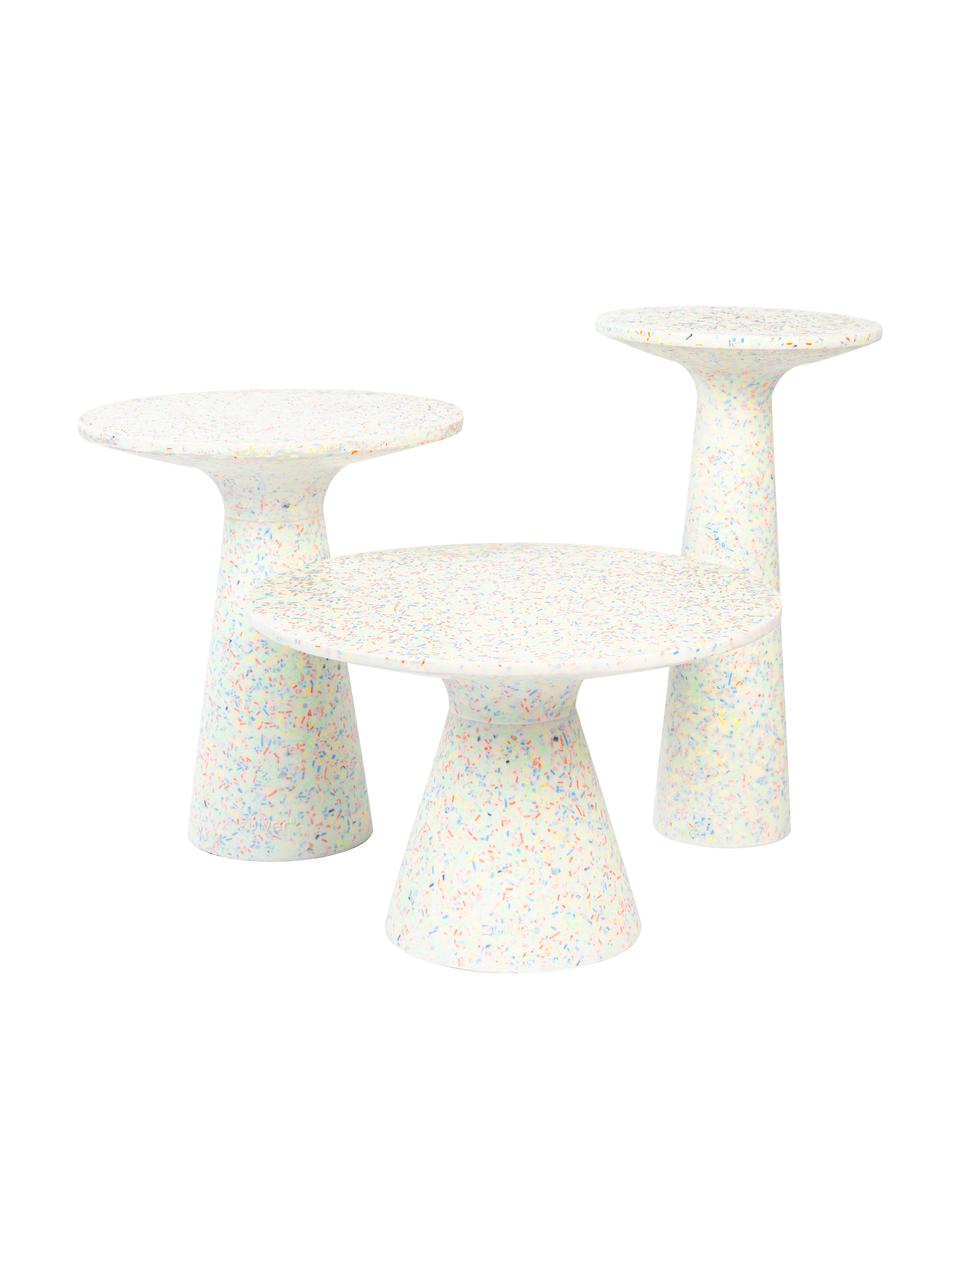 Ogrodowy stolik pomocniczy z tworzywa sztucznego z recyklingu Victoria, Lastriko, tworzywo sztuczne z recyklingu, poliresing, Biały, wielobarwny, Ø 40 x W 45 cm